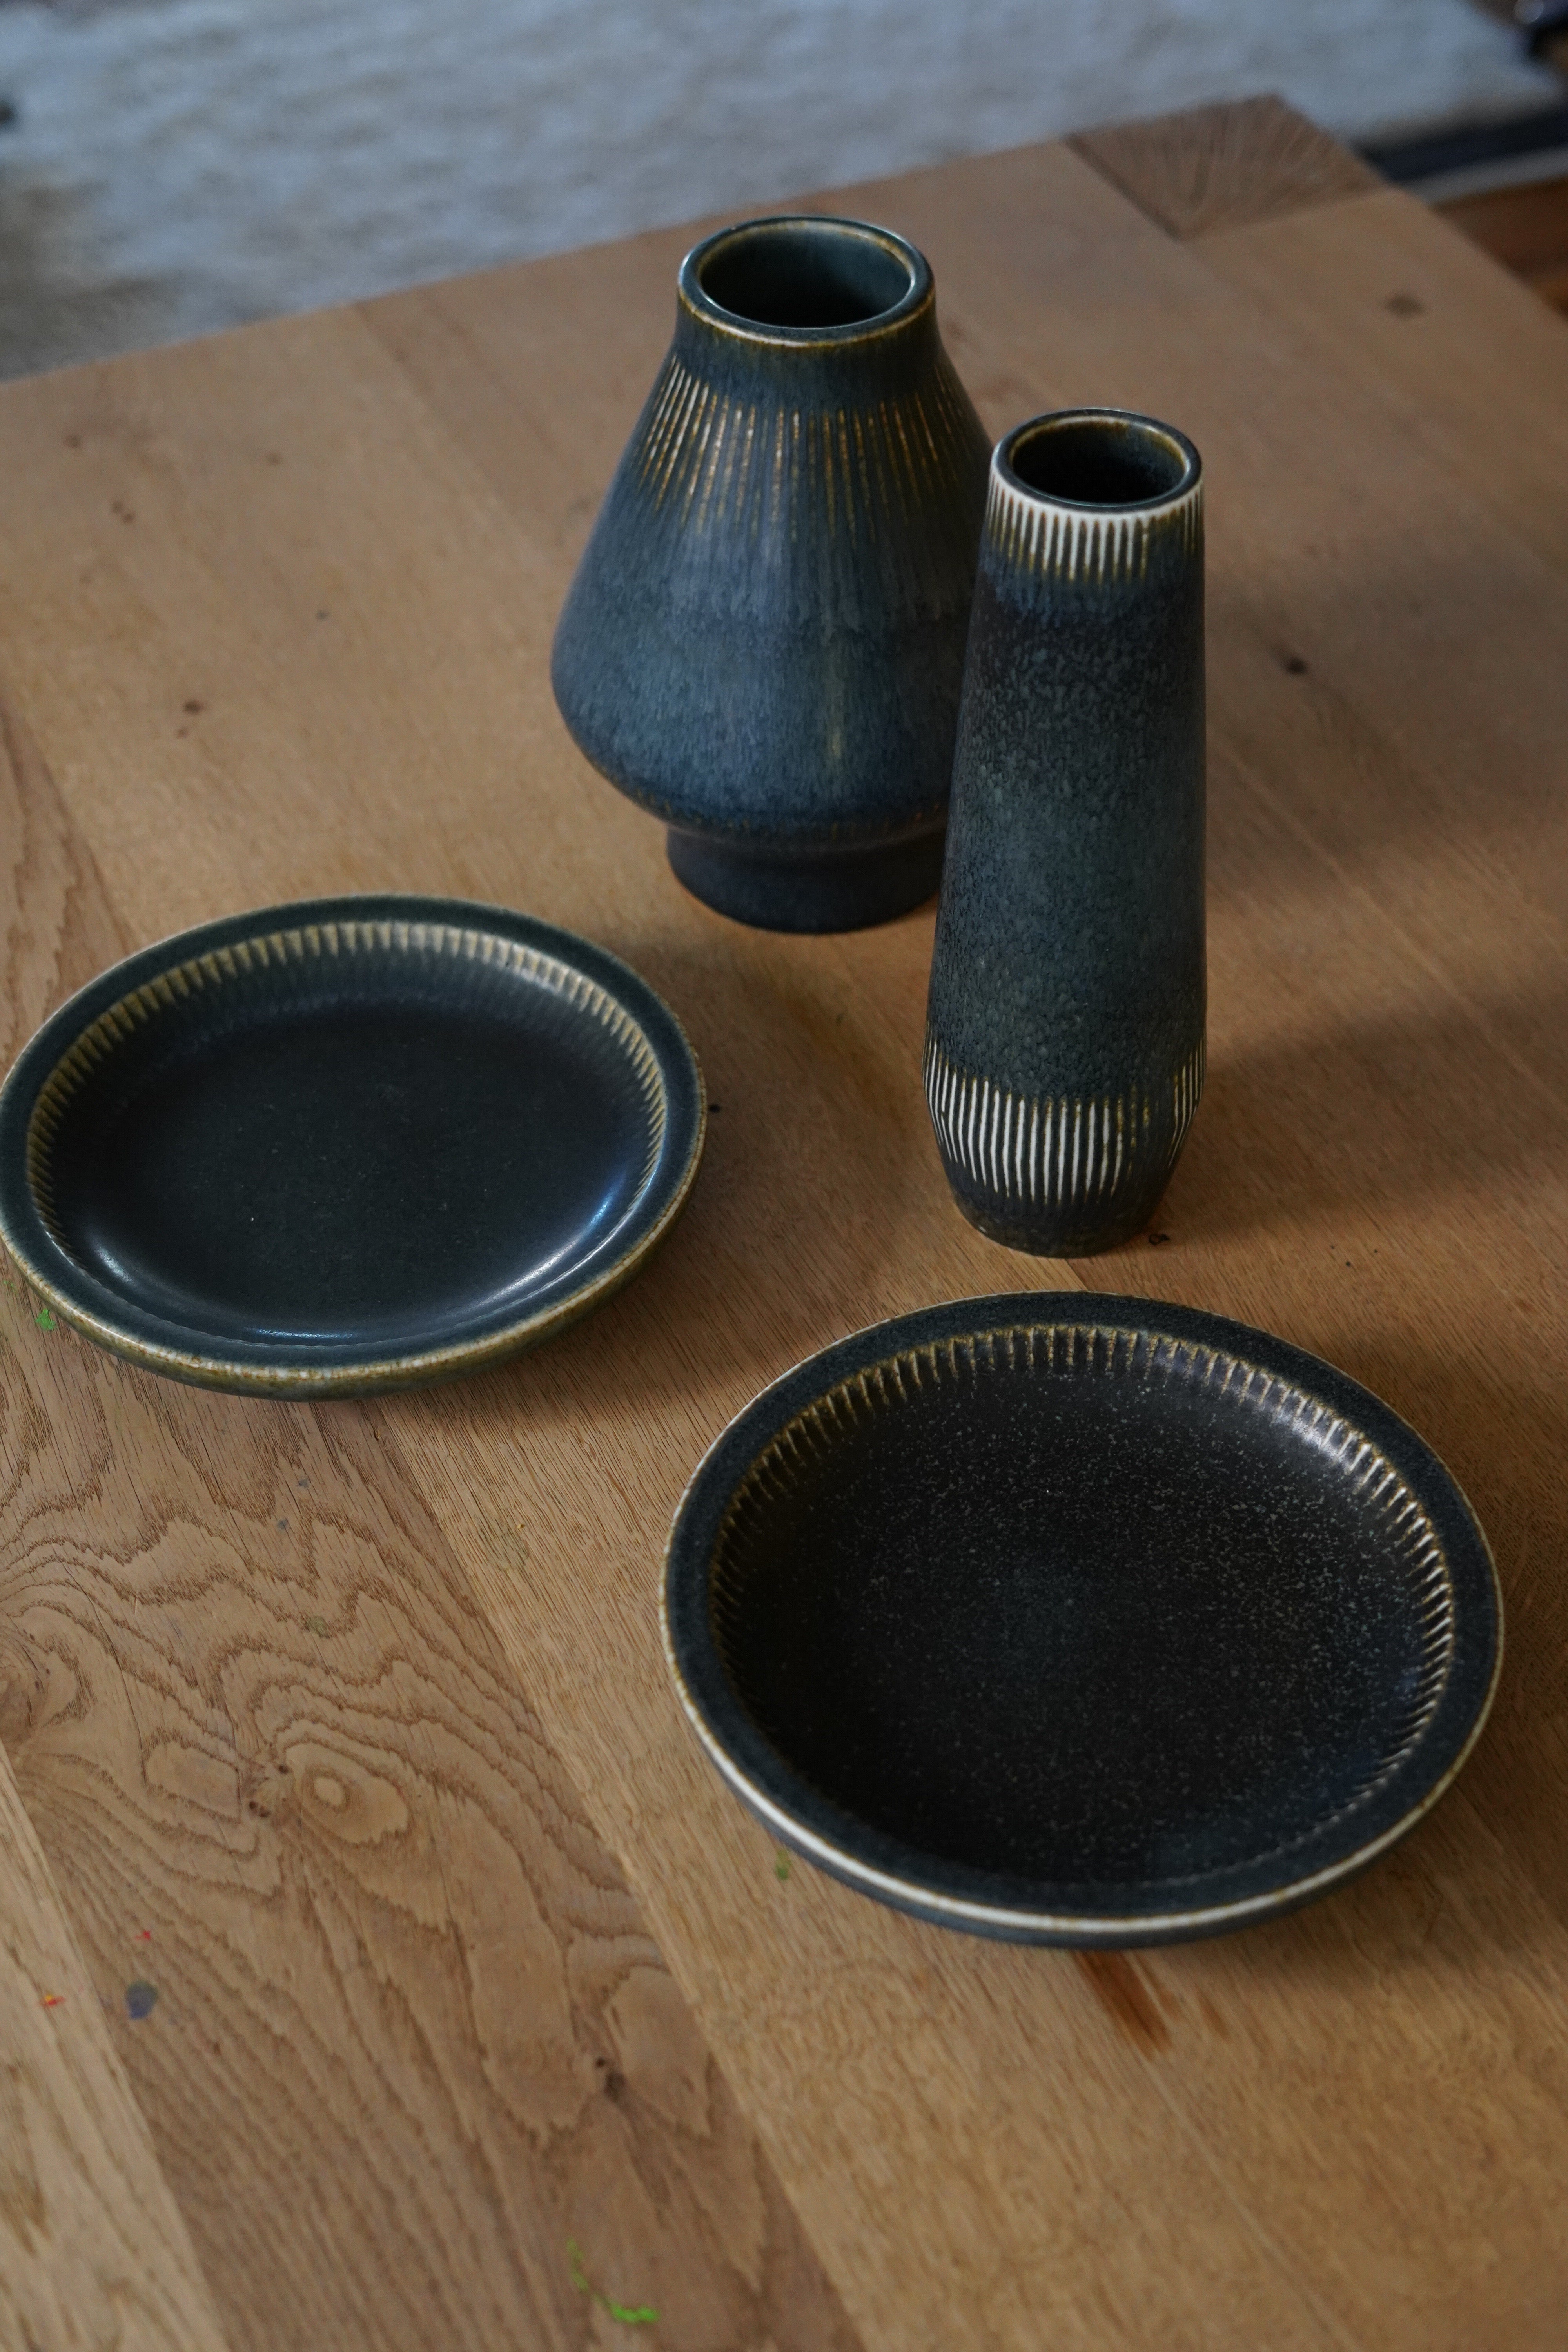 Carl-Harry Stålhane für Rörstrand  dunkelblaue Keramikschalen Schweden, 1960.
Set aus zwei Tabletts und zwei Vasen in blau/grauer Glasur
Vasen 9,5